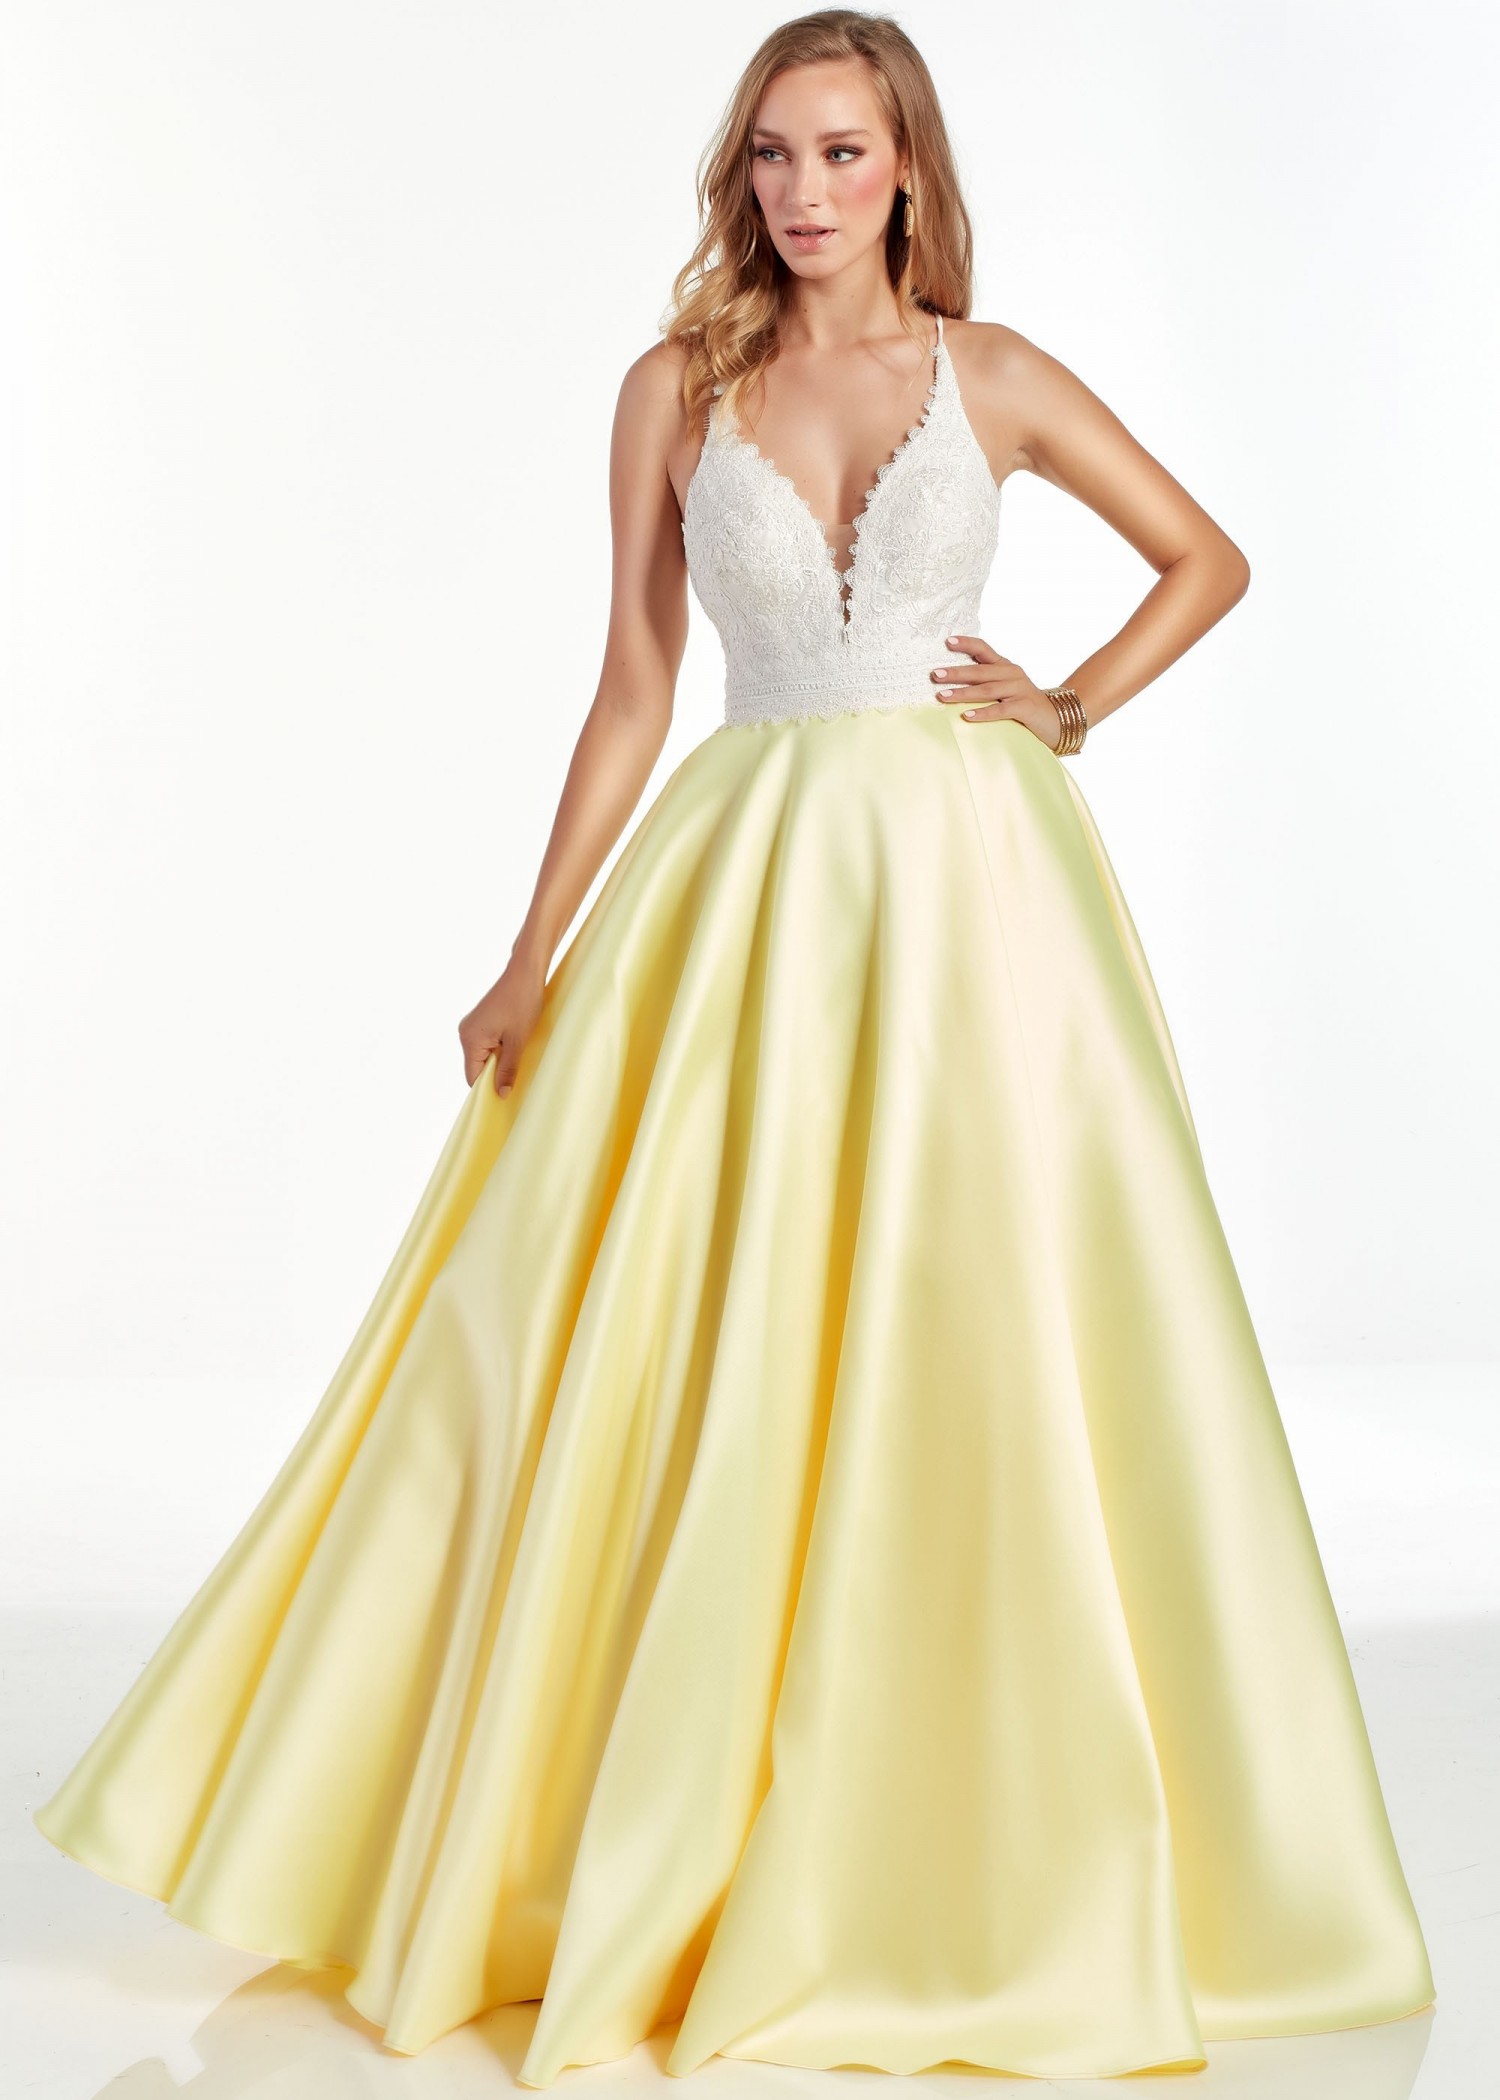 Alyce 60879 Diamond White & Yellow Ball Gown